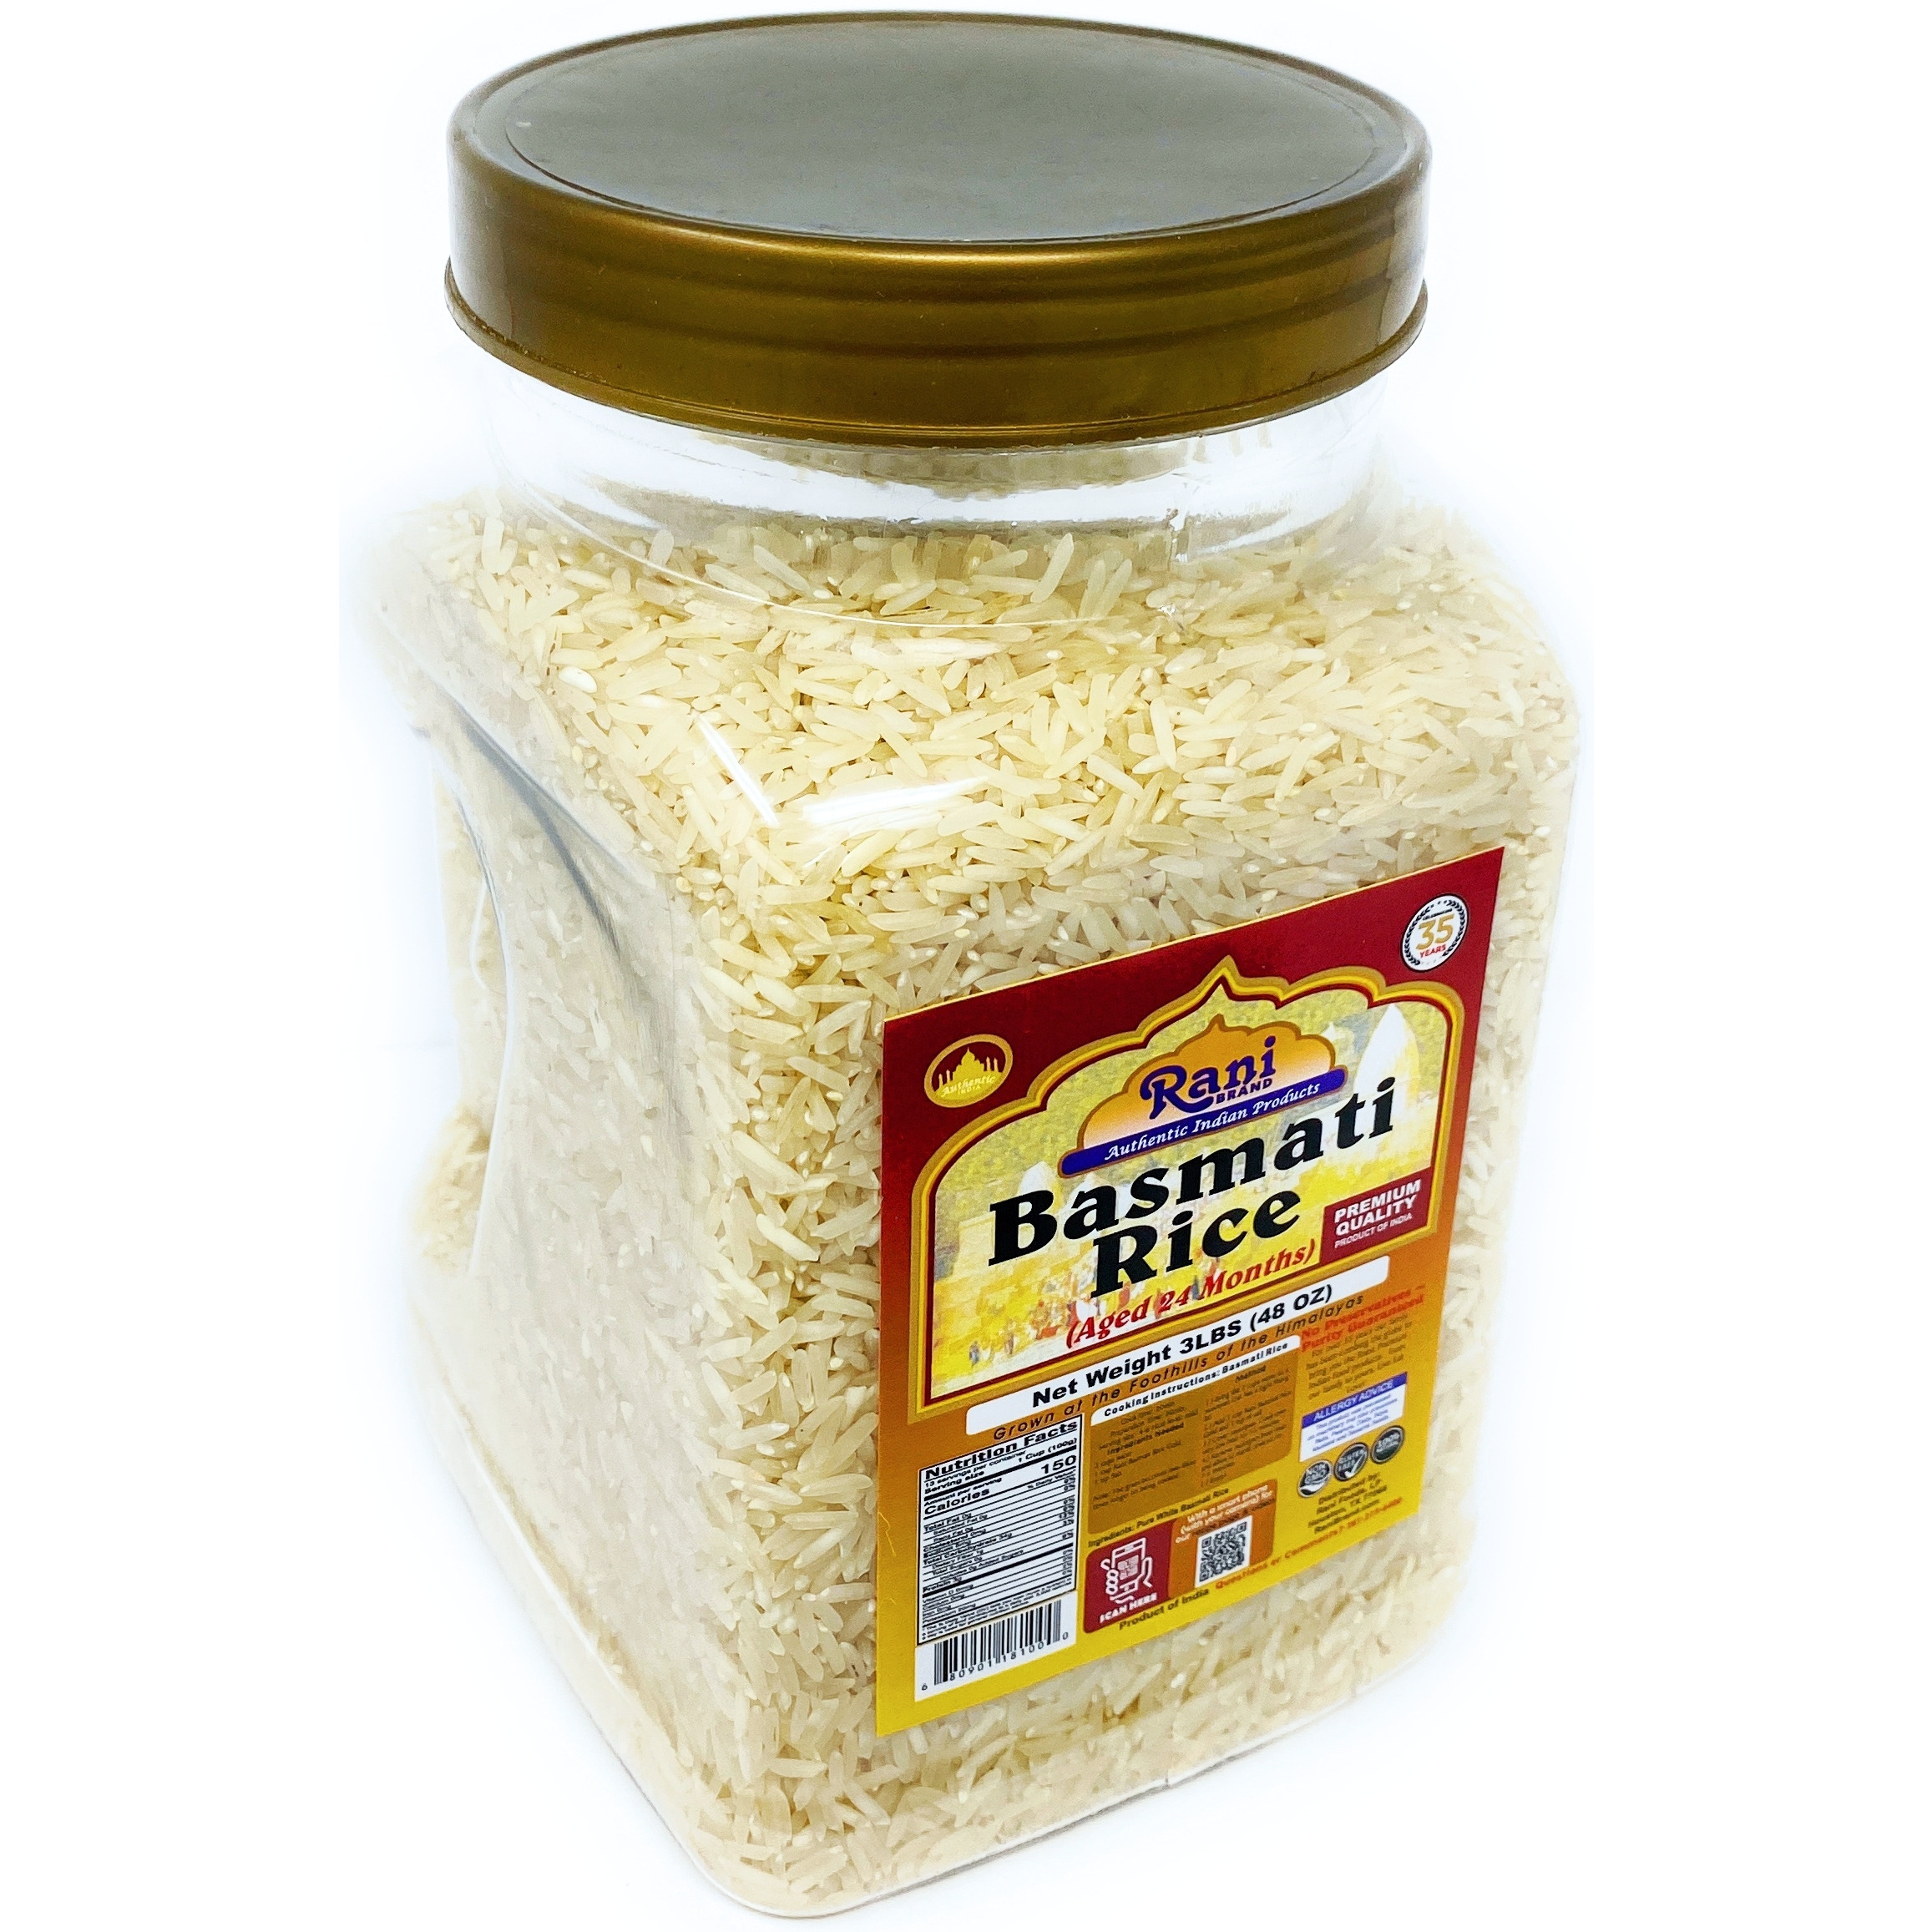 Rani Platinum White Basmati Rice Extra Long Aged, 3lbs (48oz) ~ PET Jar ~ All Natural | Vegan | Gluten Free Ingredients | Indian Origin